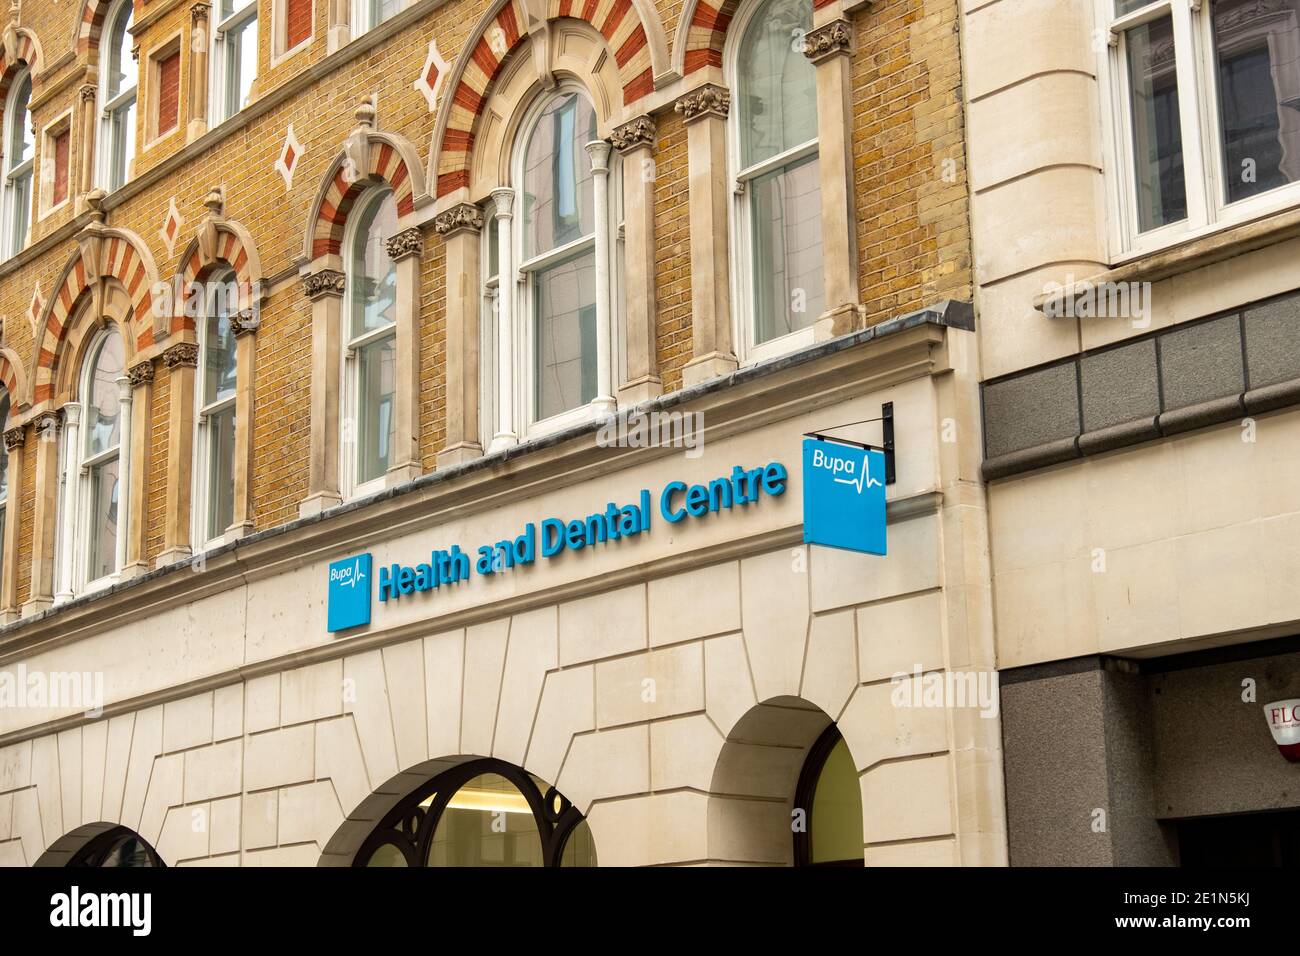 Londra - Gennaio 2020: BUPA Dental Care Branch - un gruppo internazionale di assicurazioni e assistenza sanitaria Foto Stock